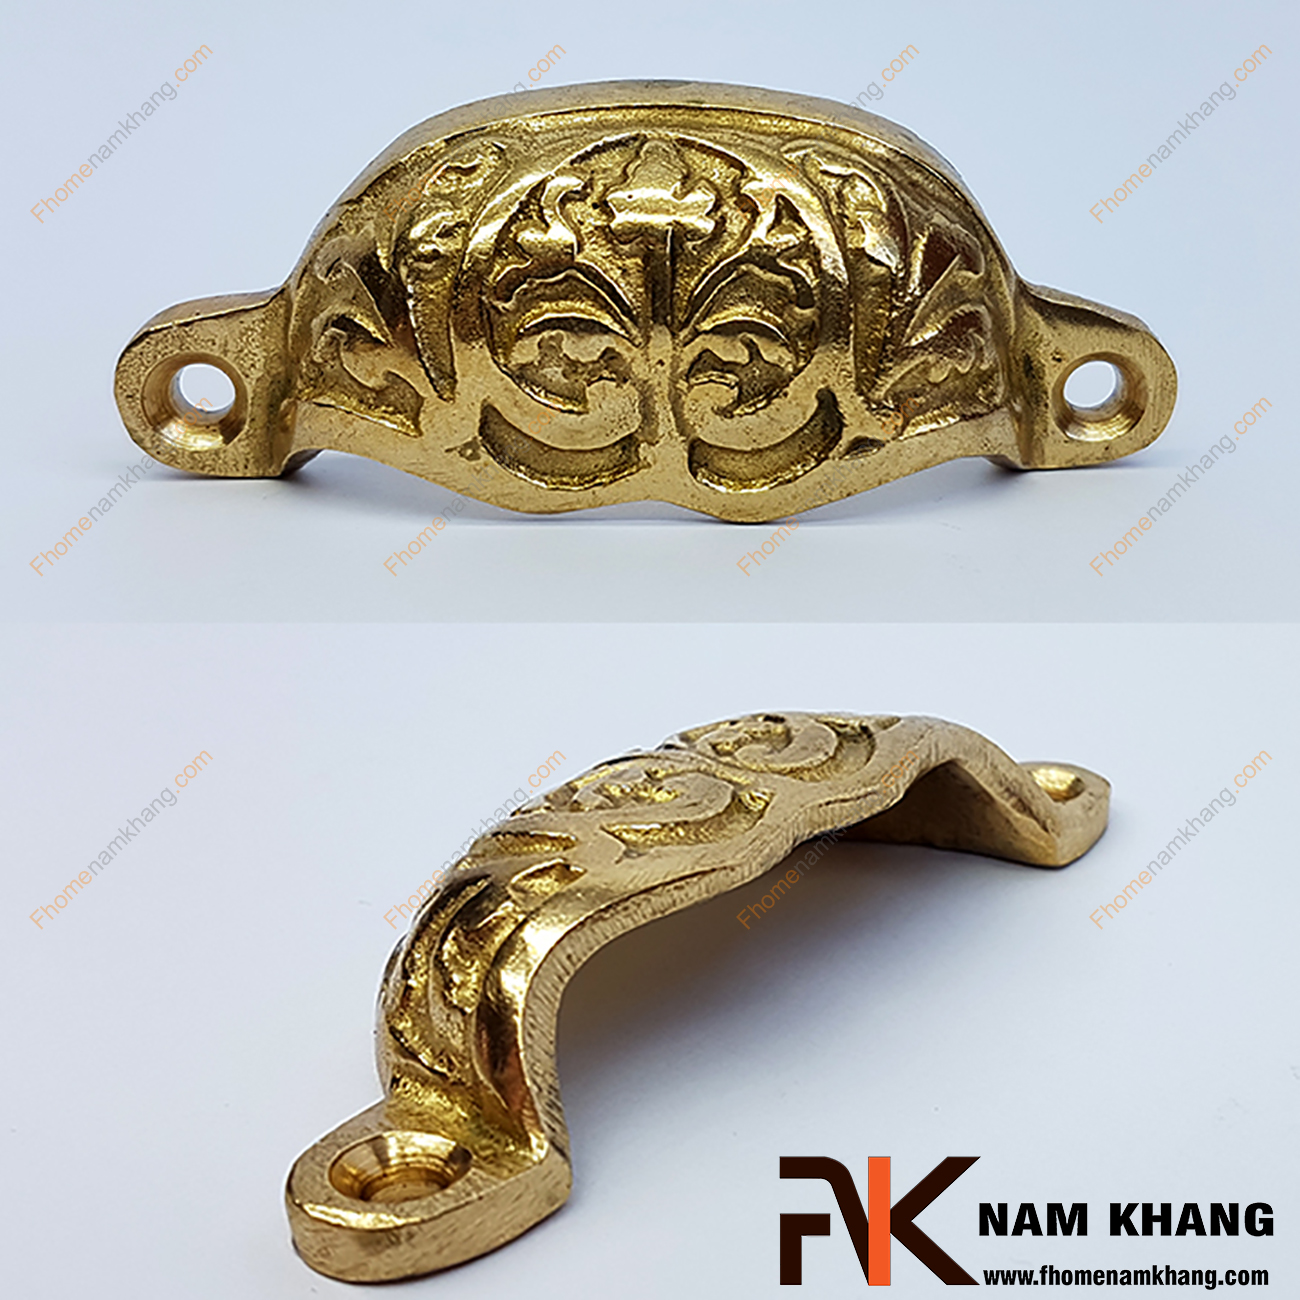 Tay nắm tủ đồng vàng NKD008 có thiết kế đậm chất hoàng gia Á ĐÔNG với kiểu dáng lá mỏng uốn cong và được khắc họa các đường nét đối xứng.